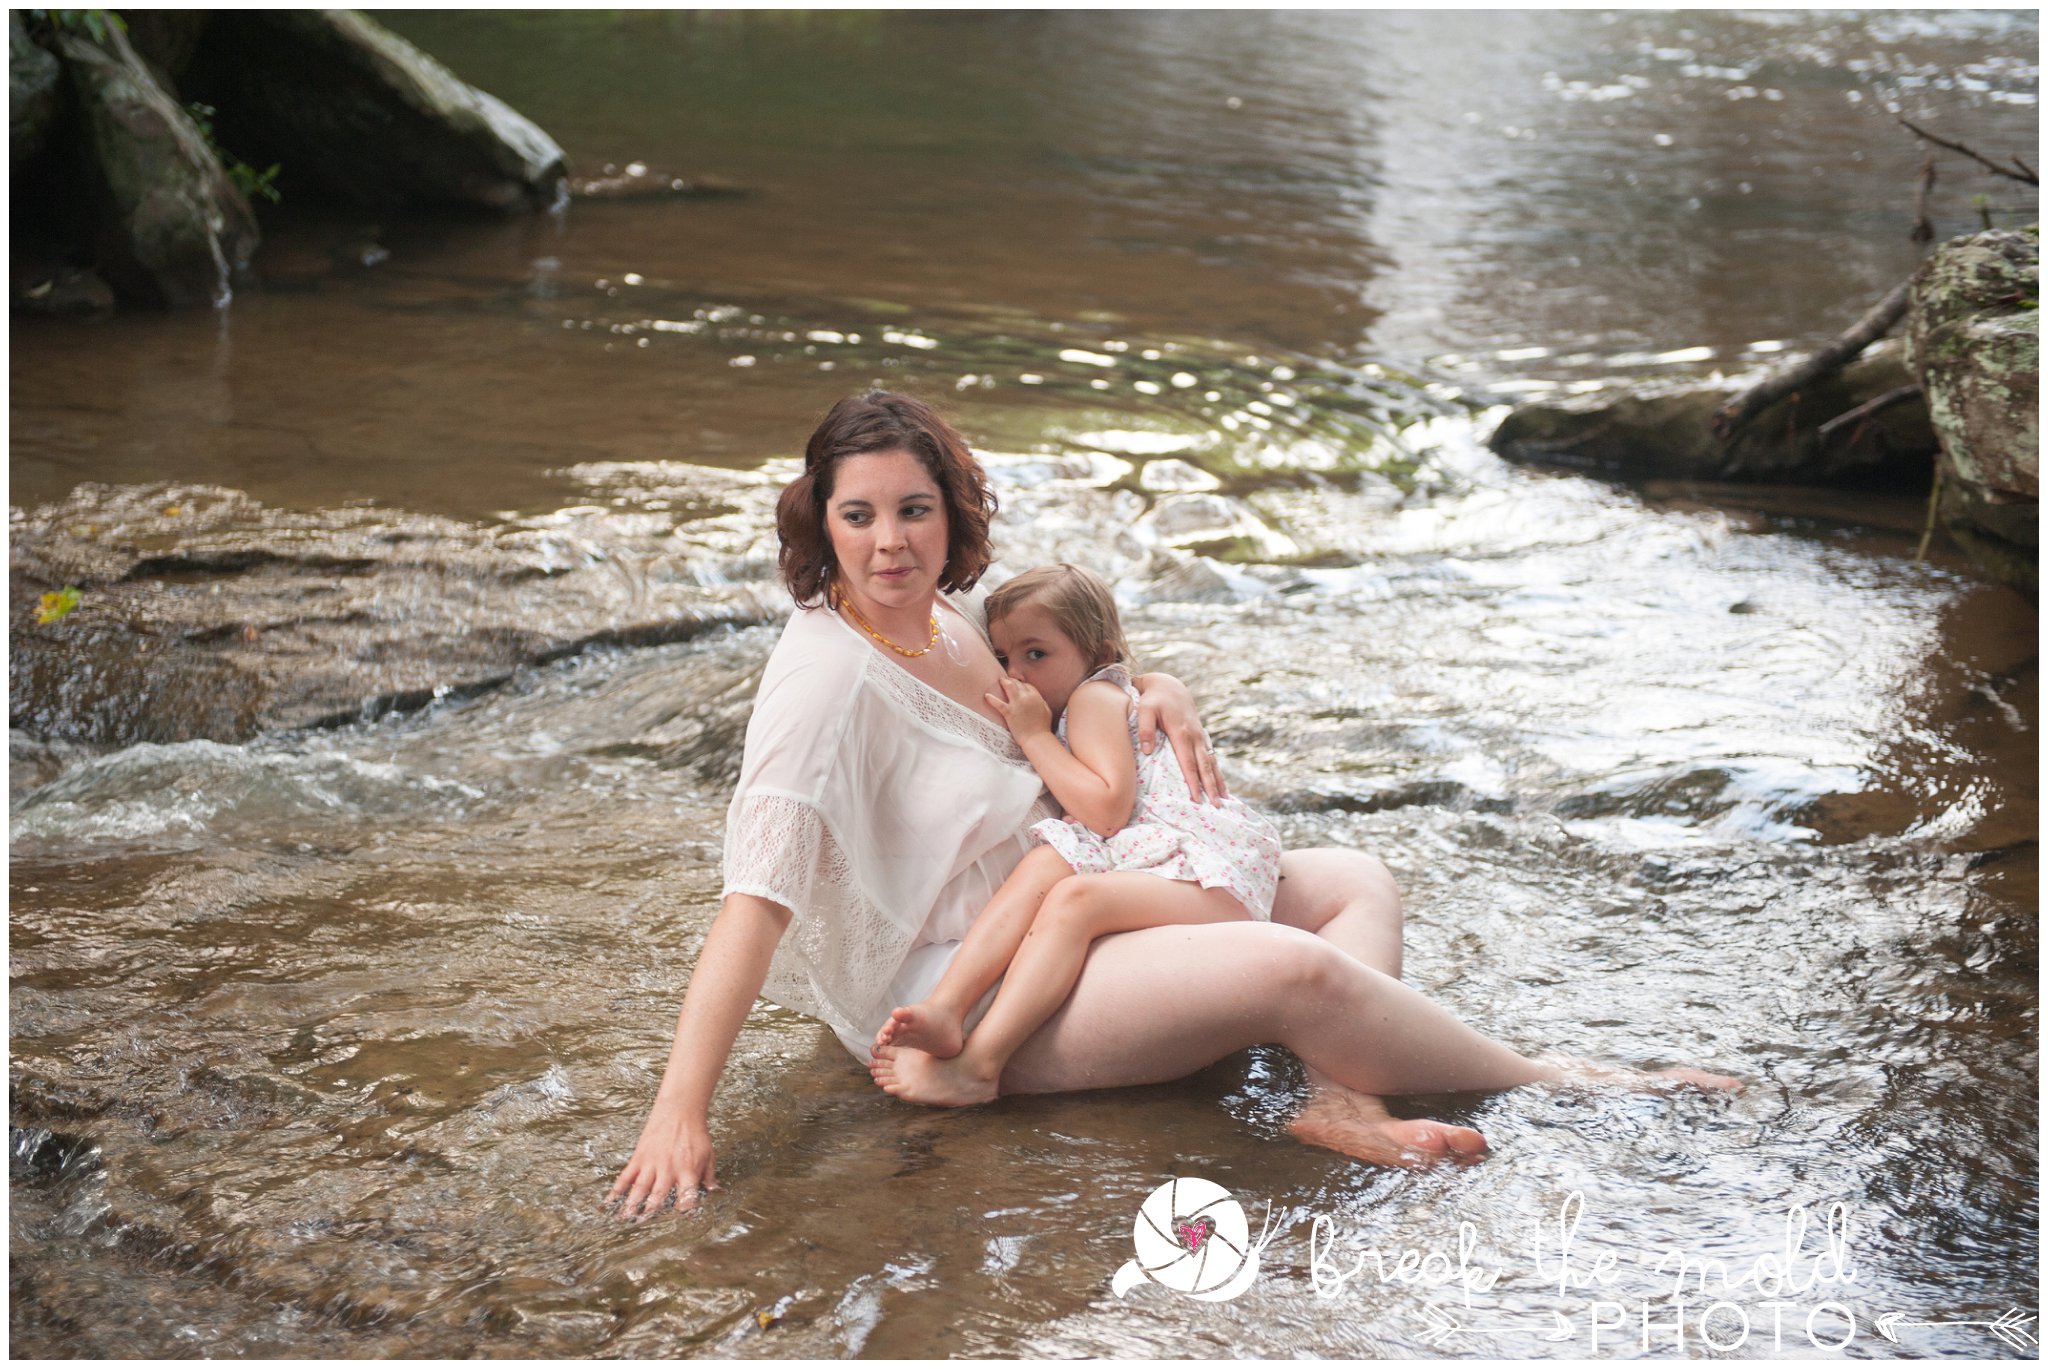 break-the-mold-photo-nursing-mothers-waterfall-women-celebrate-beauty_5444.jpg